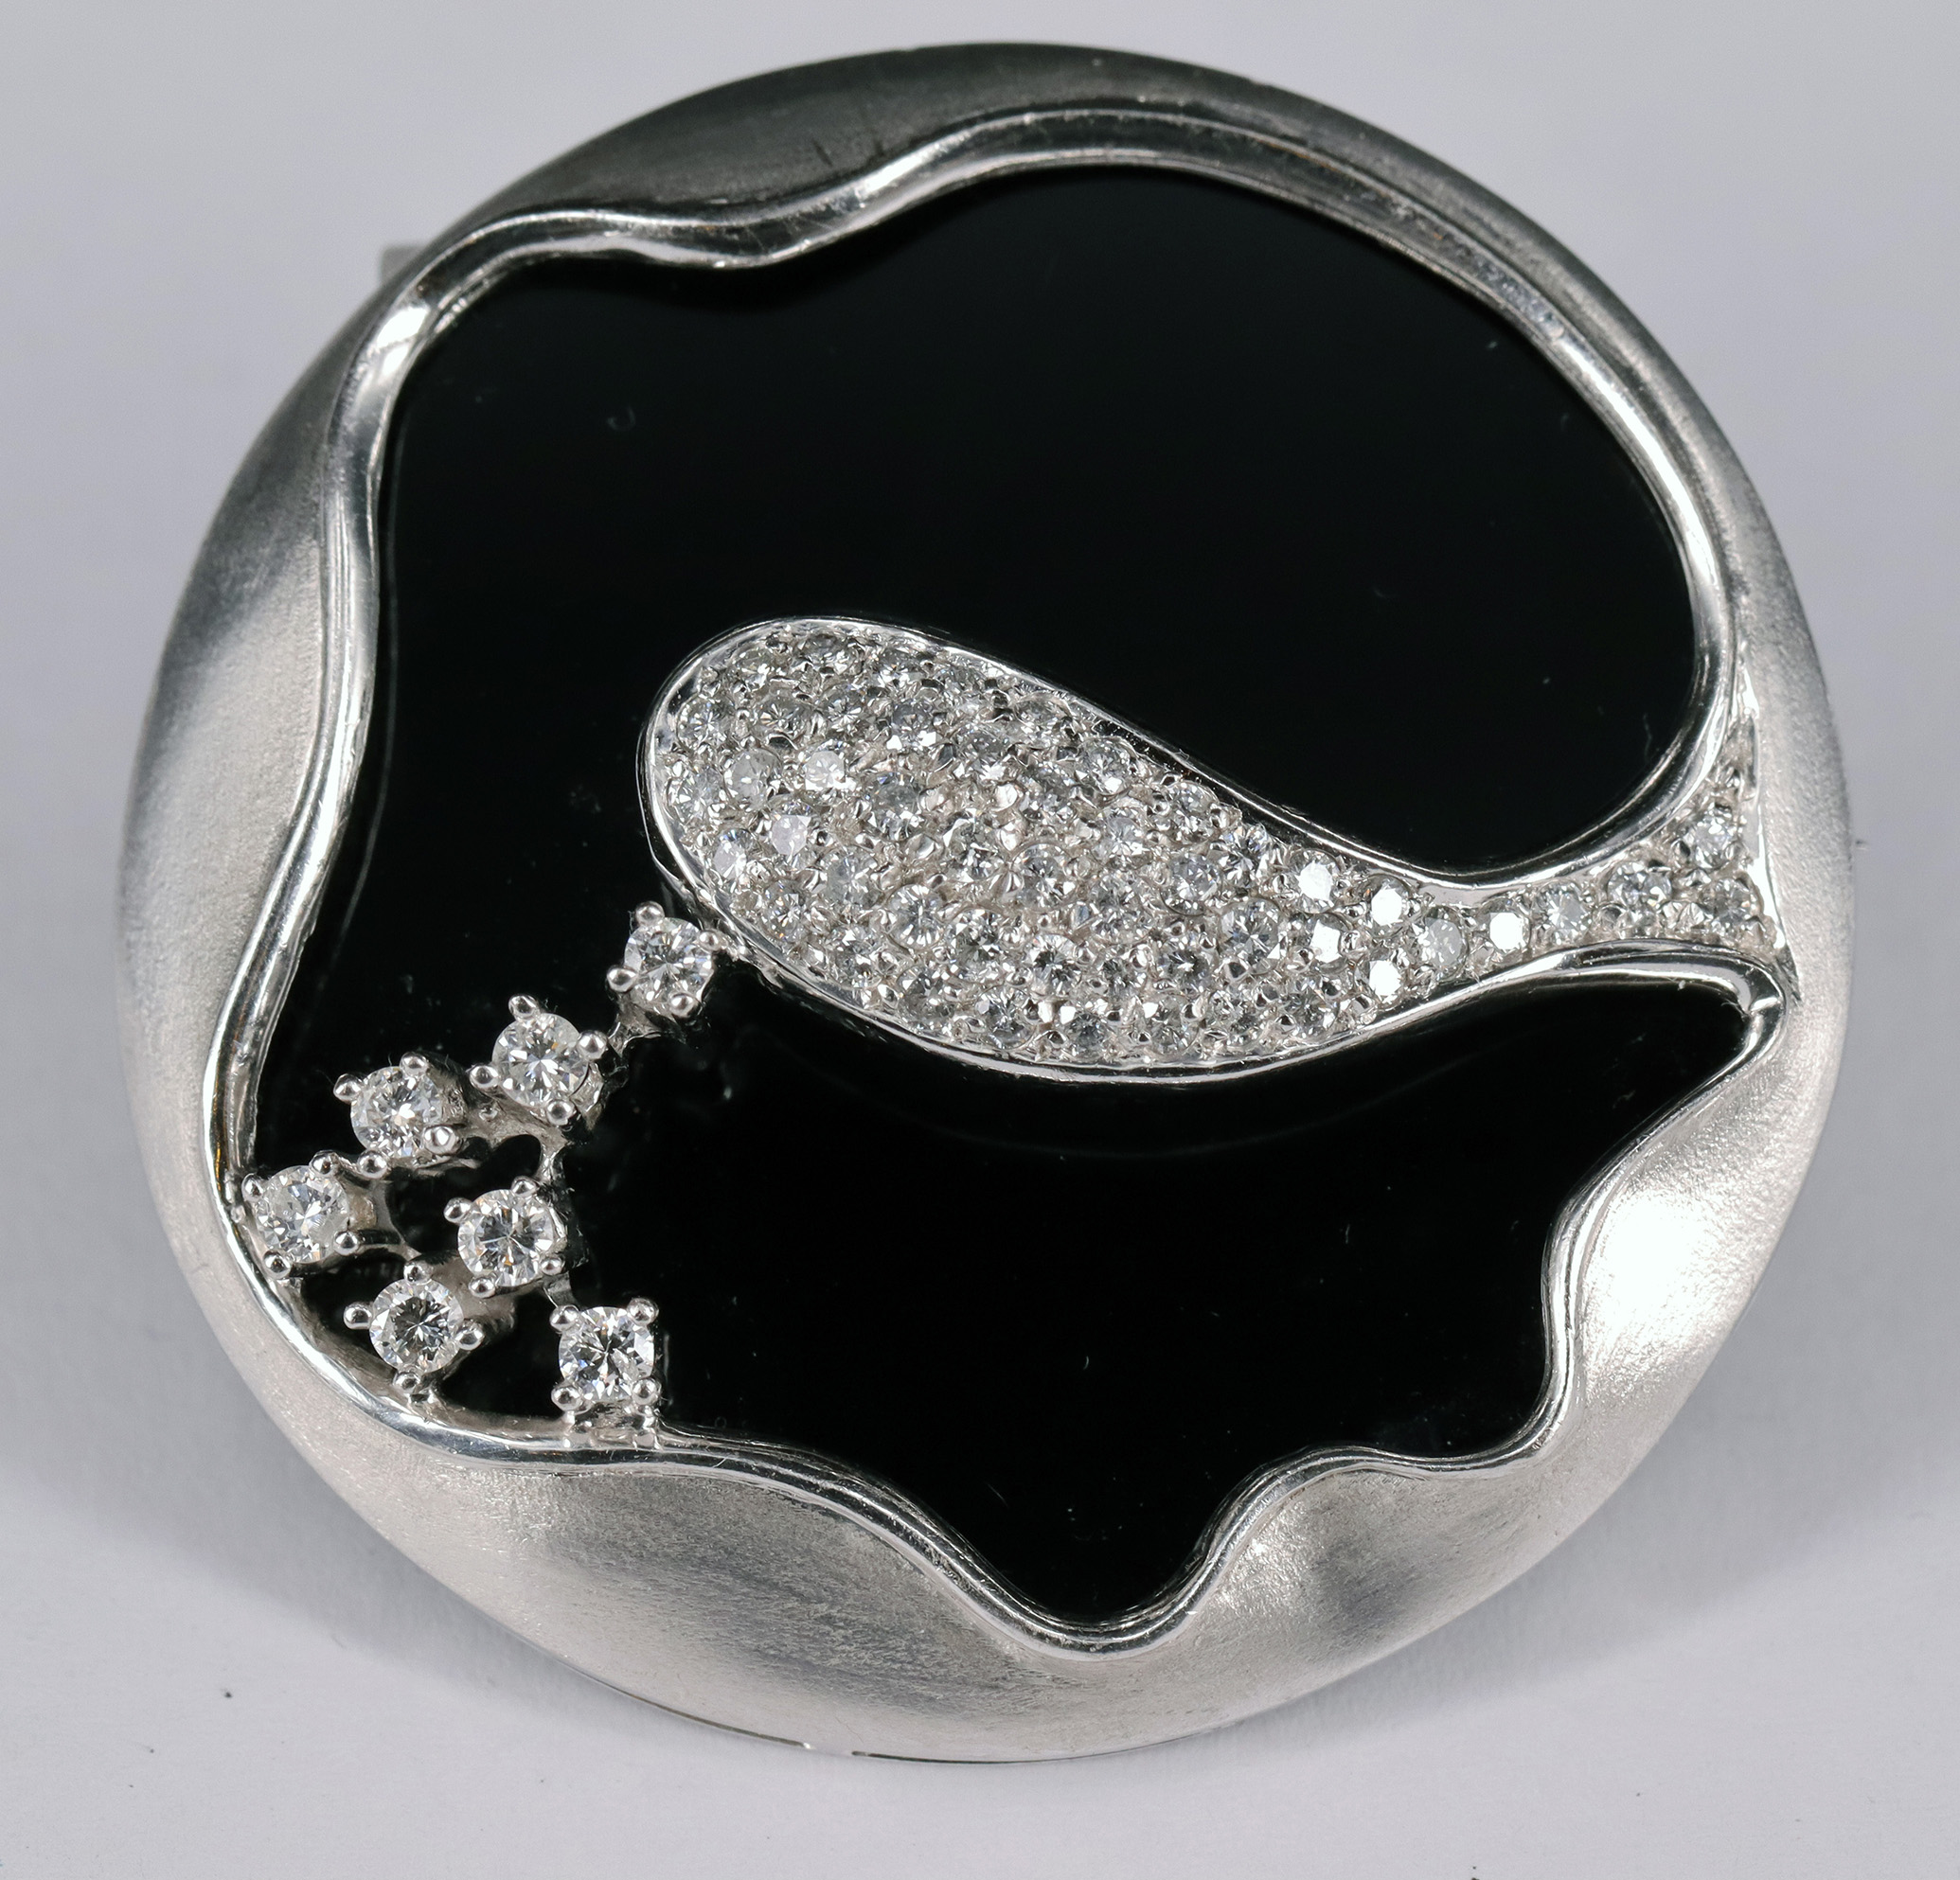 Onyxbrosche / Onyx brooch, 750er WG, kreisrund, mit ca 50 Diamanten besetzt, D. 4,6 cm, 25,48 g